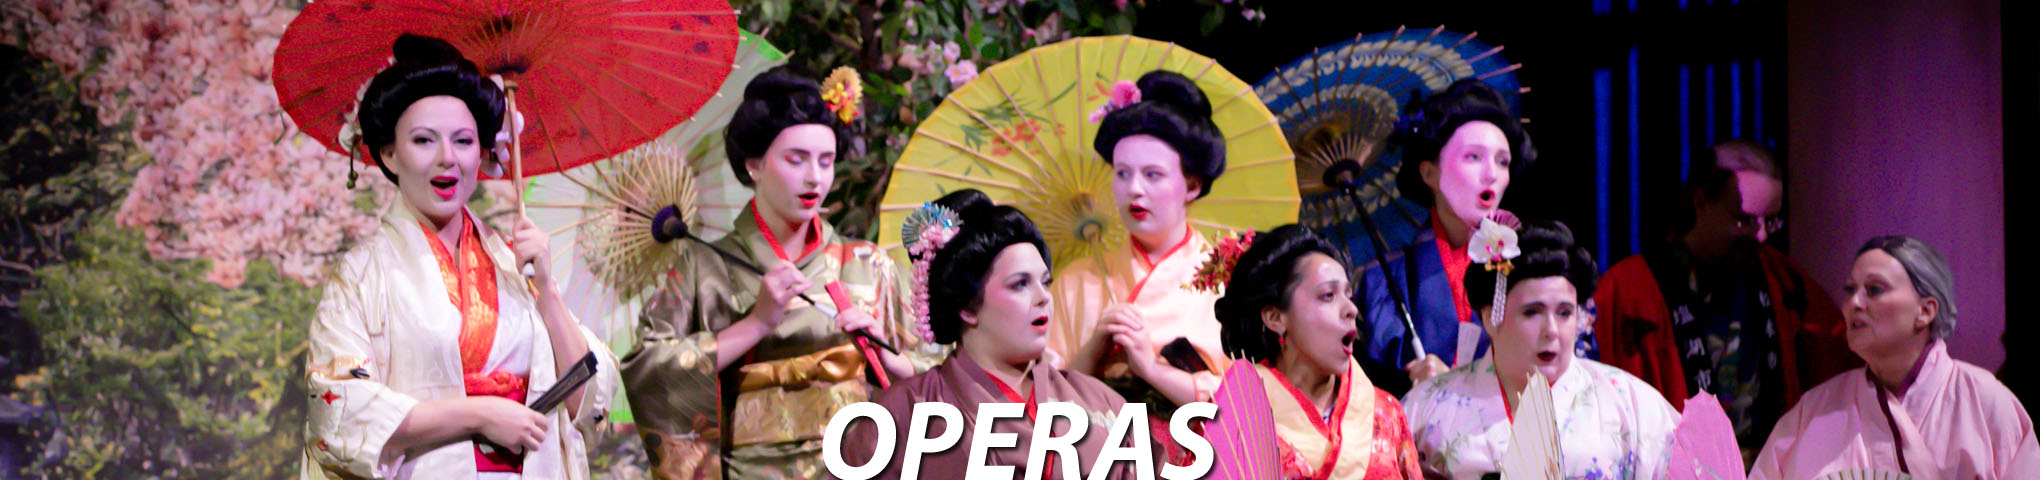 Operas at Lyrical Opera Theater